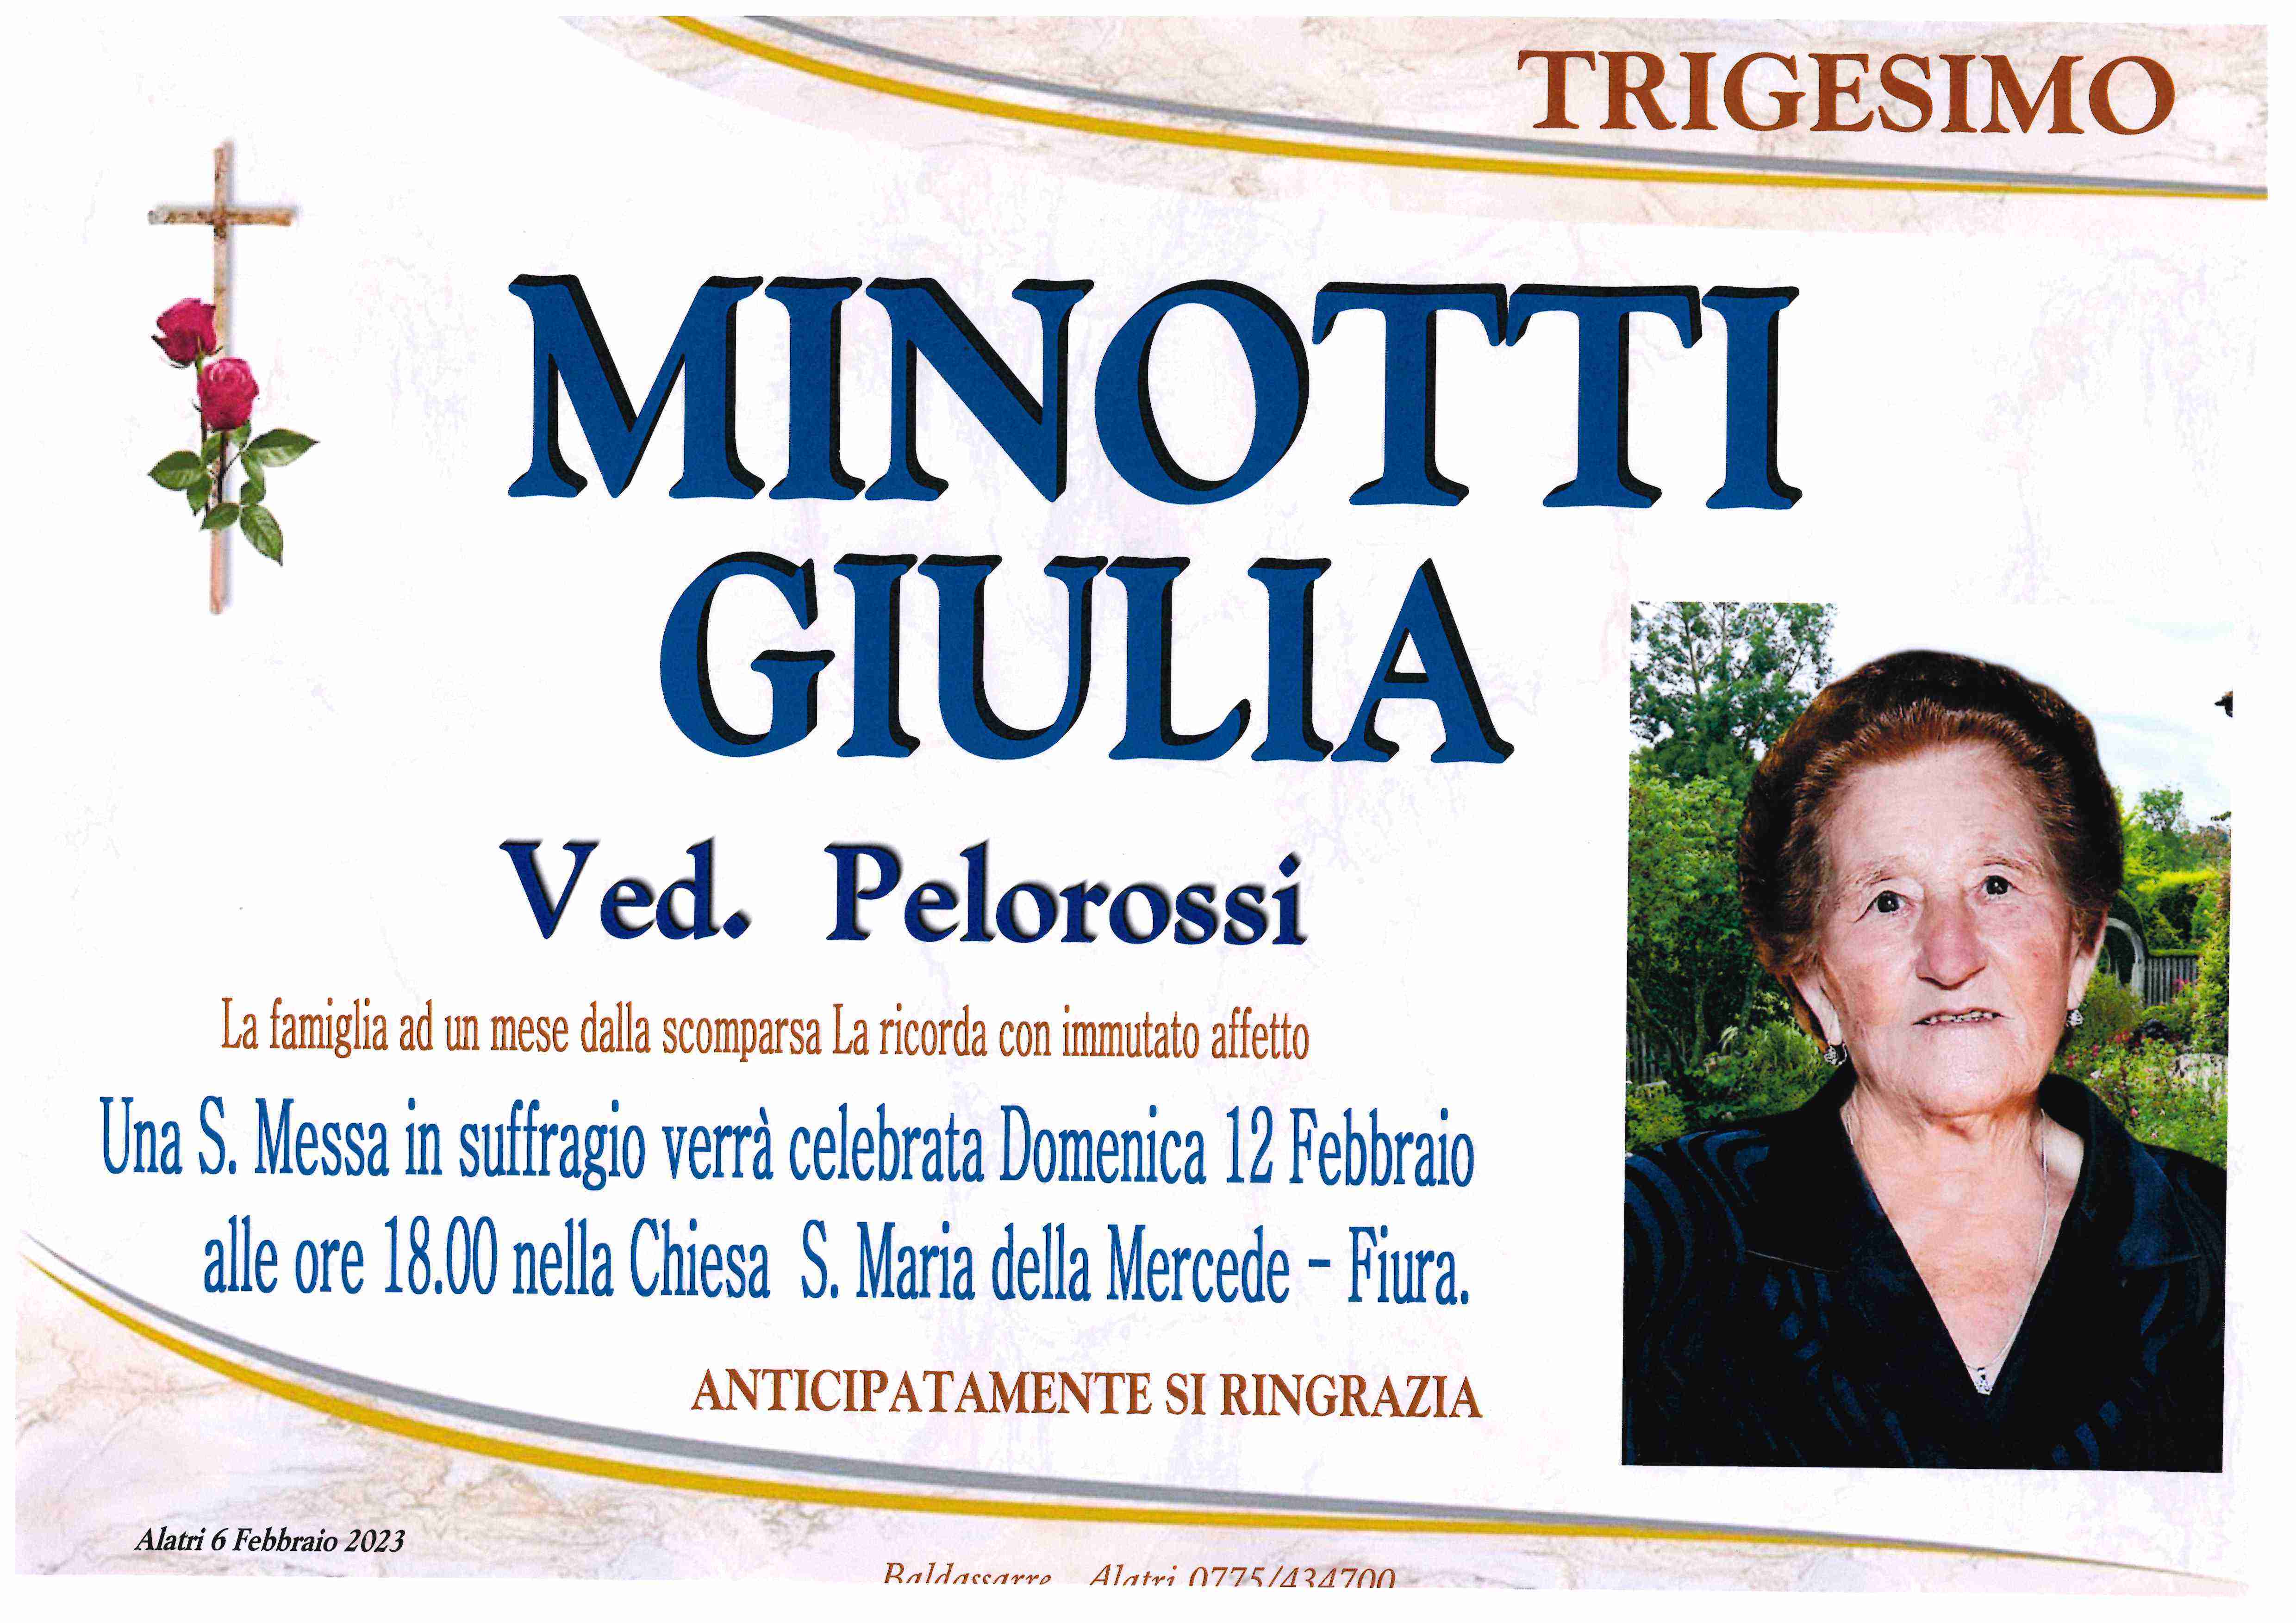 Giulia Minotti